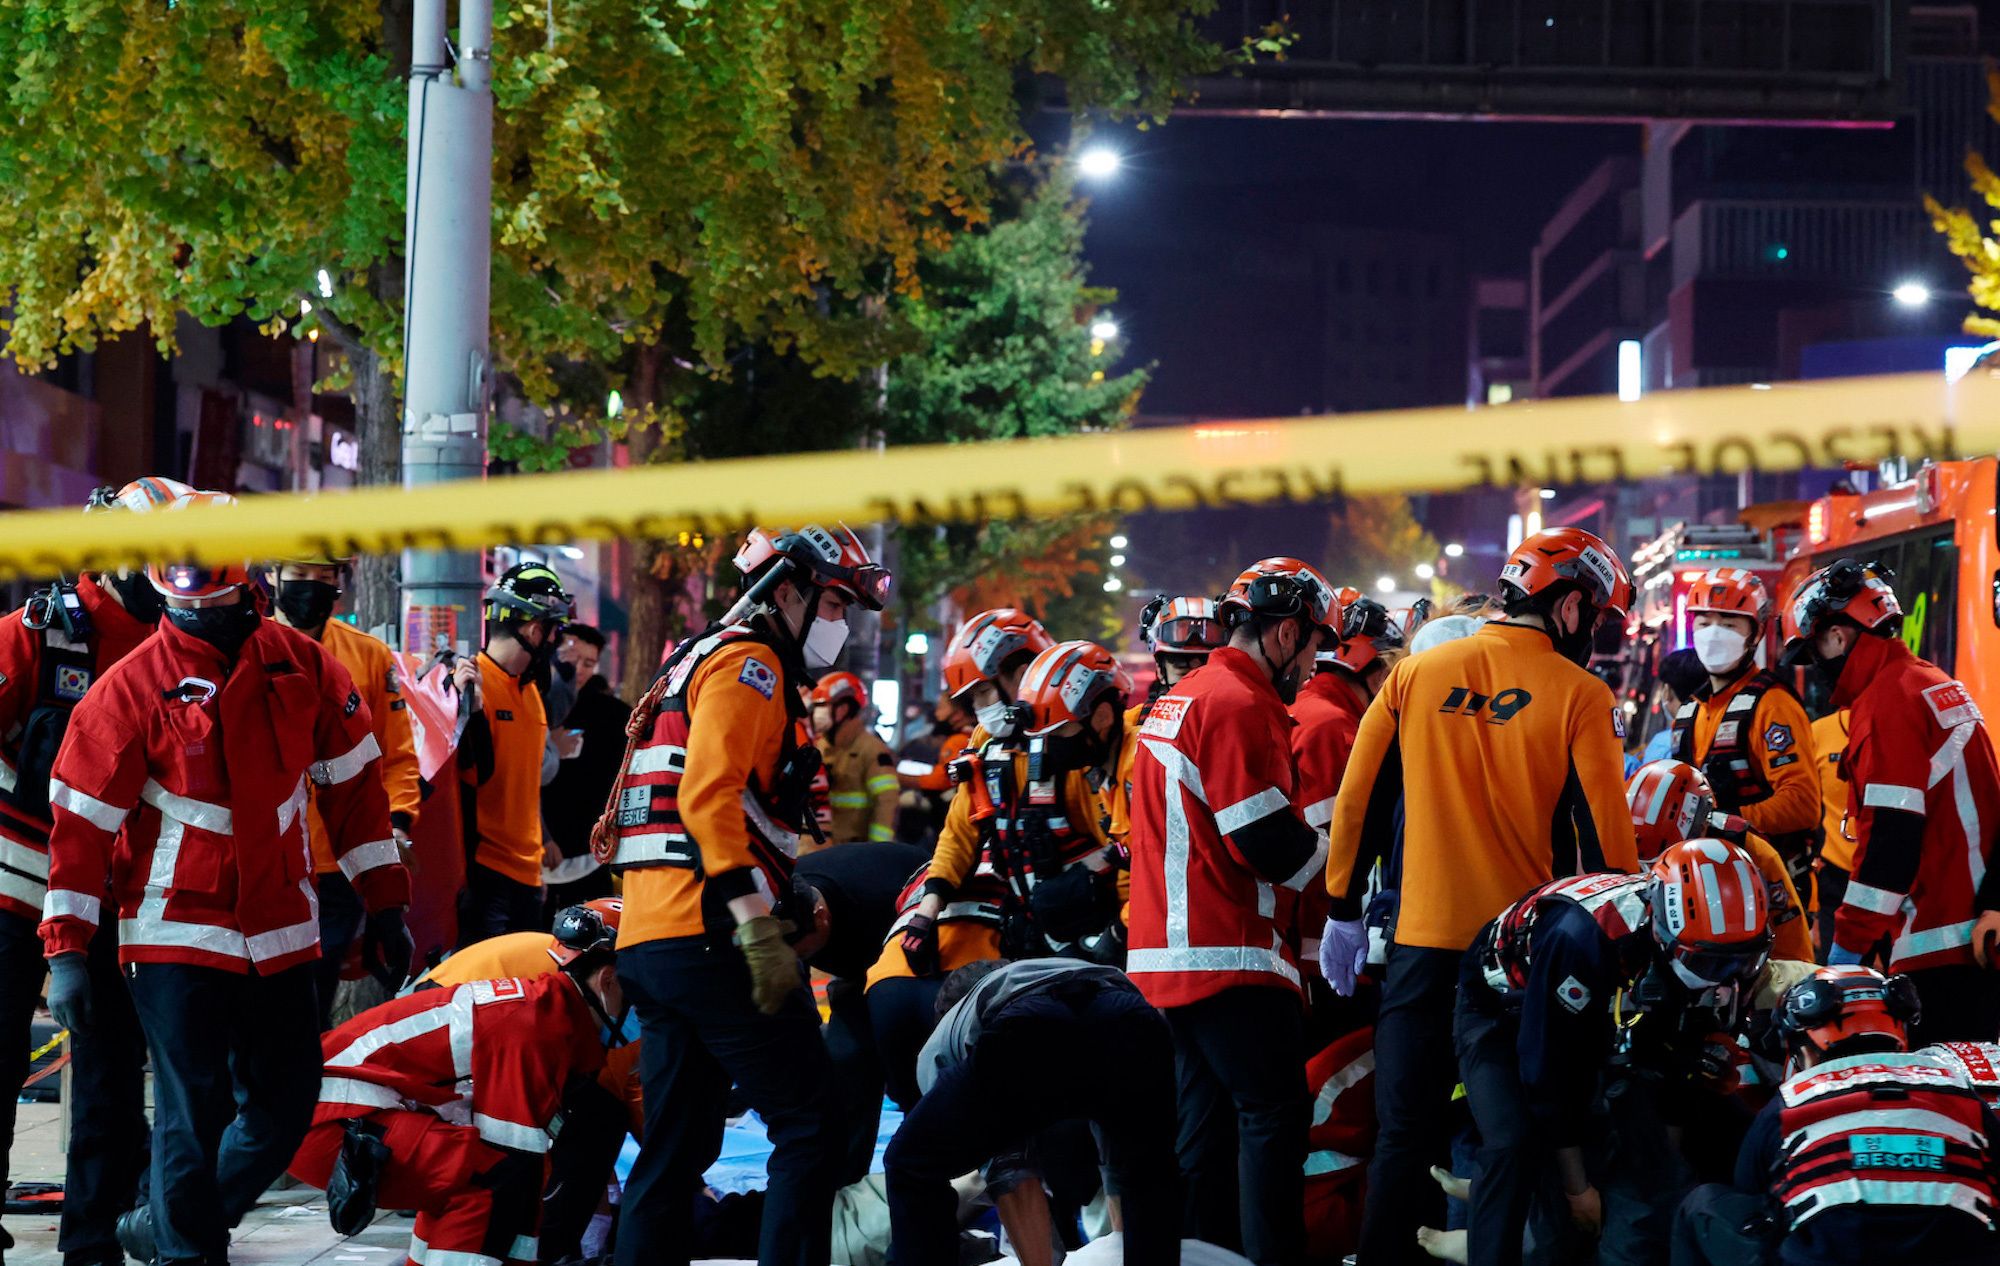 South Korea begins probe into deadly Halloween crush